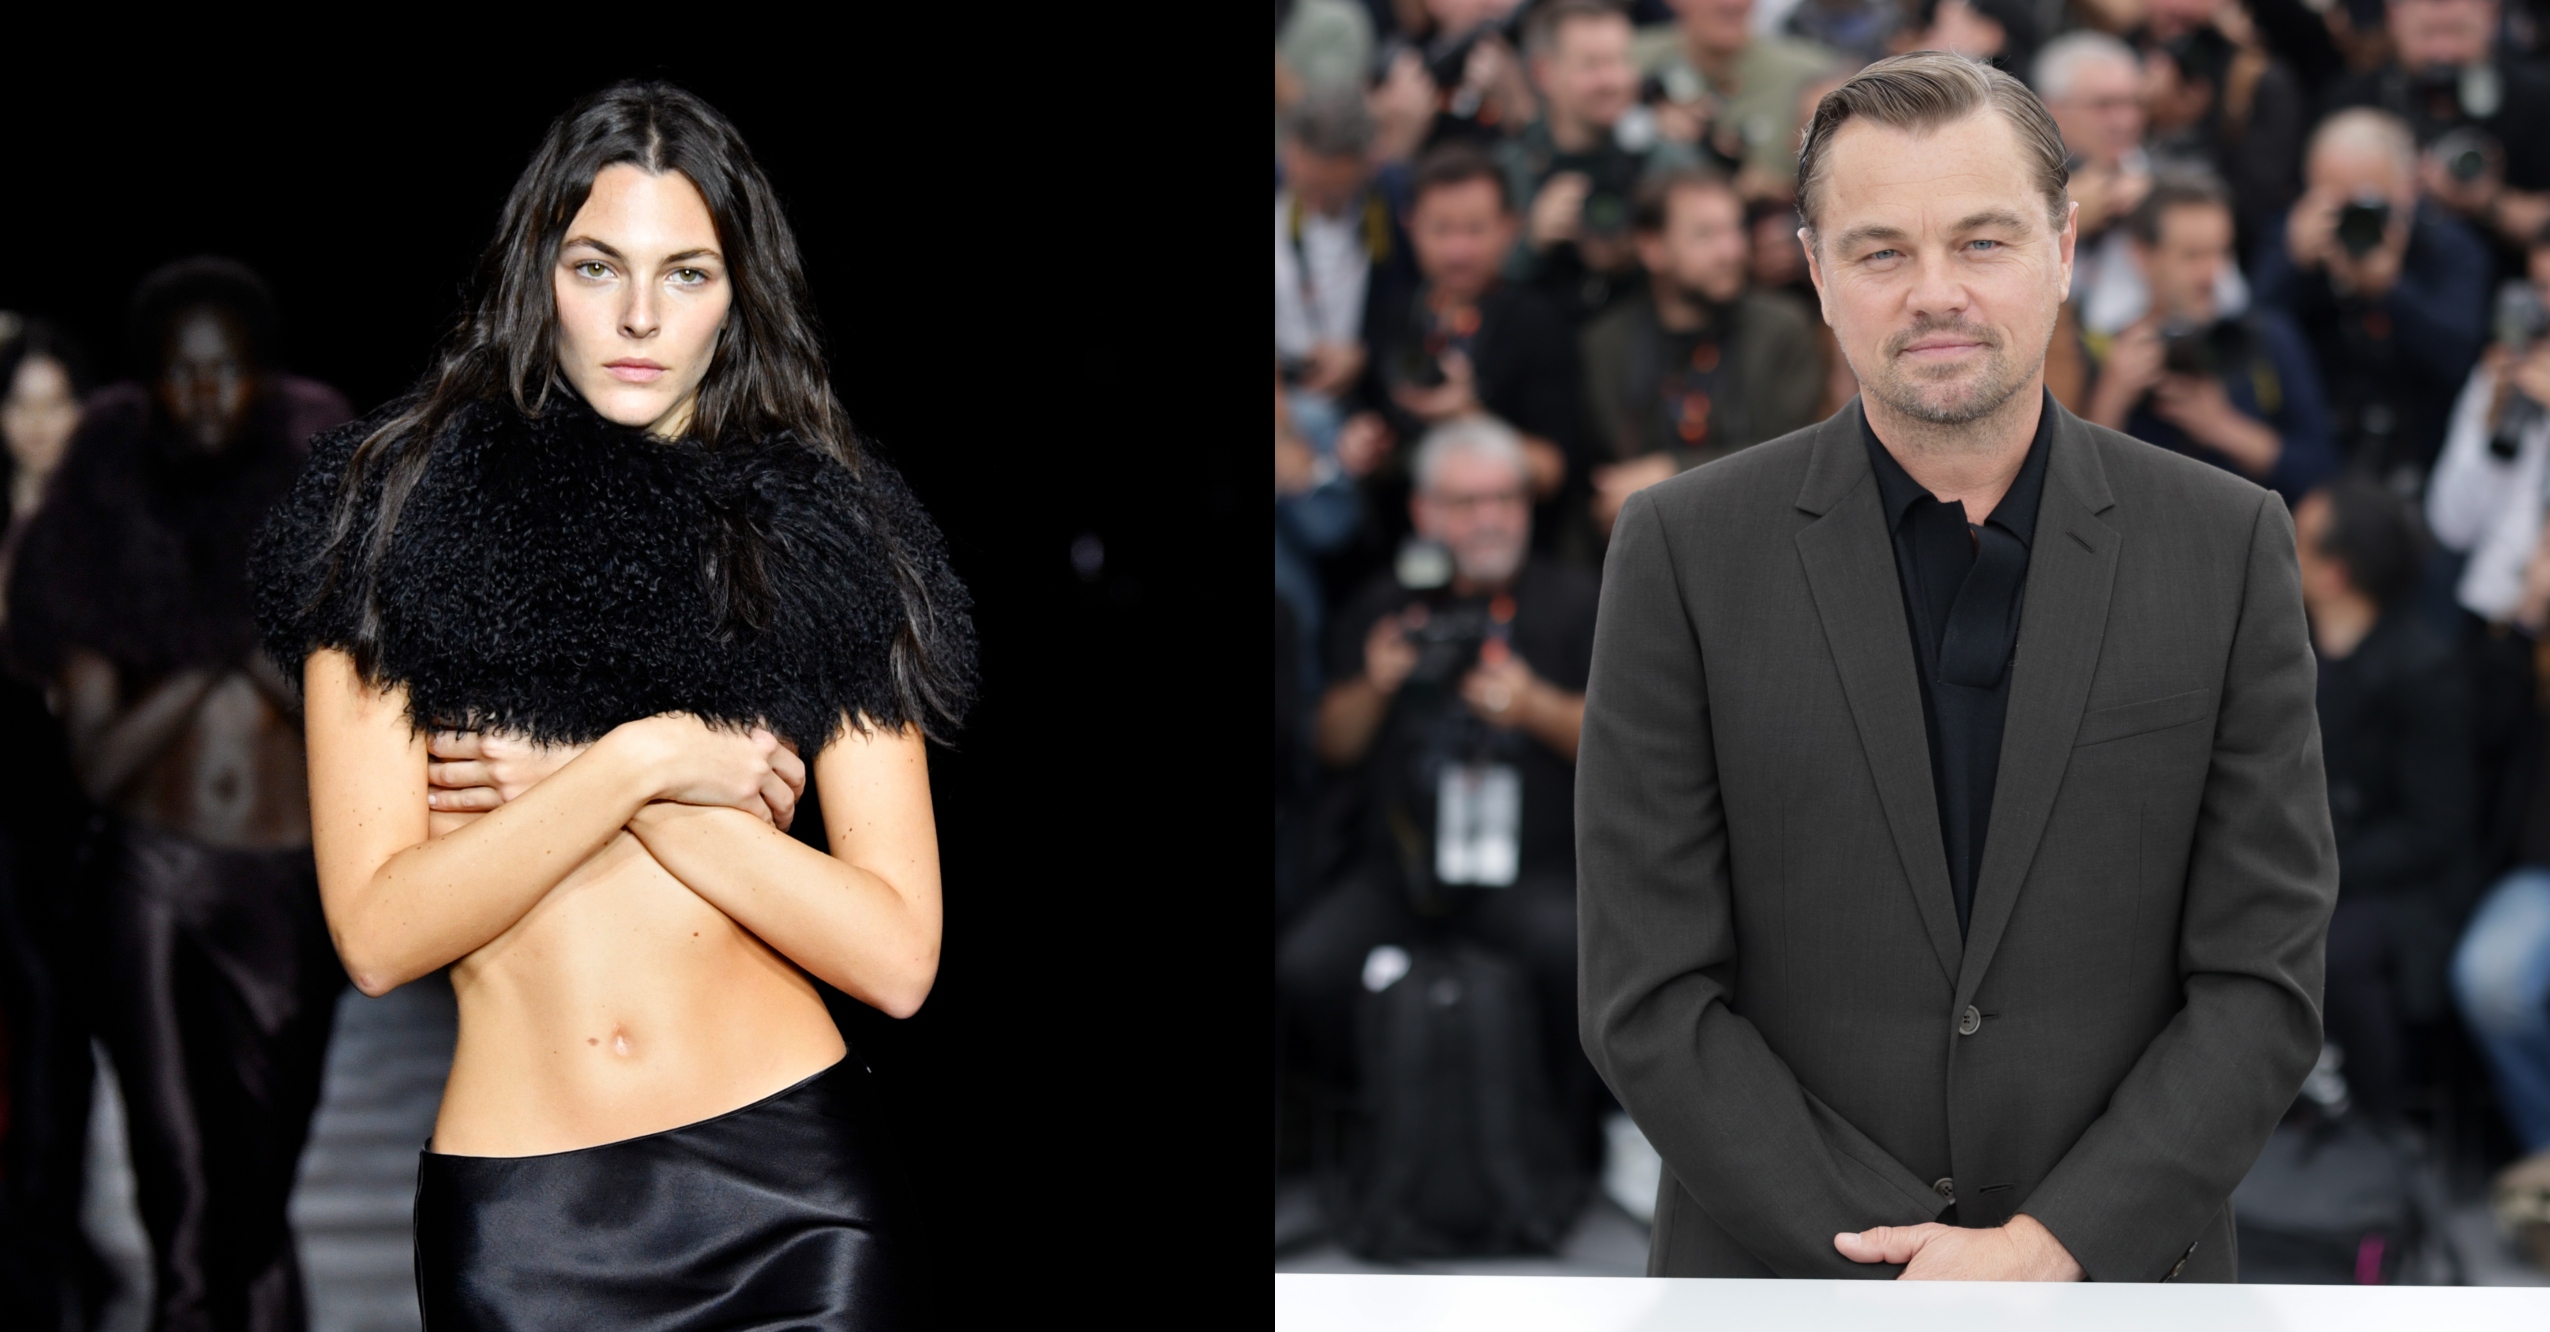 Incontra la modella italiana Vittoria Ceretti, la nuova fidanzata di Leonardo DiCaprio